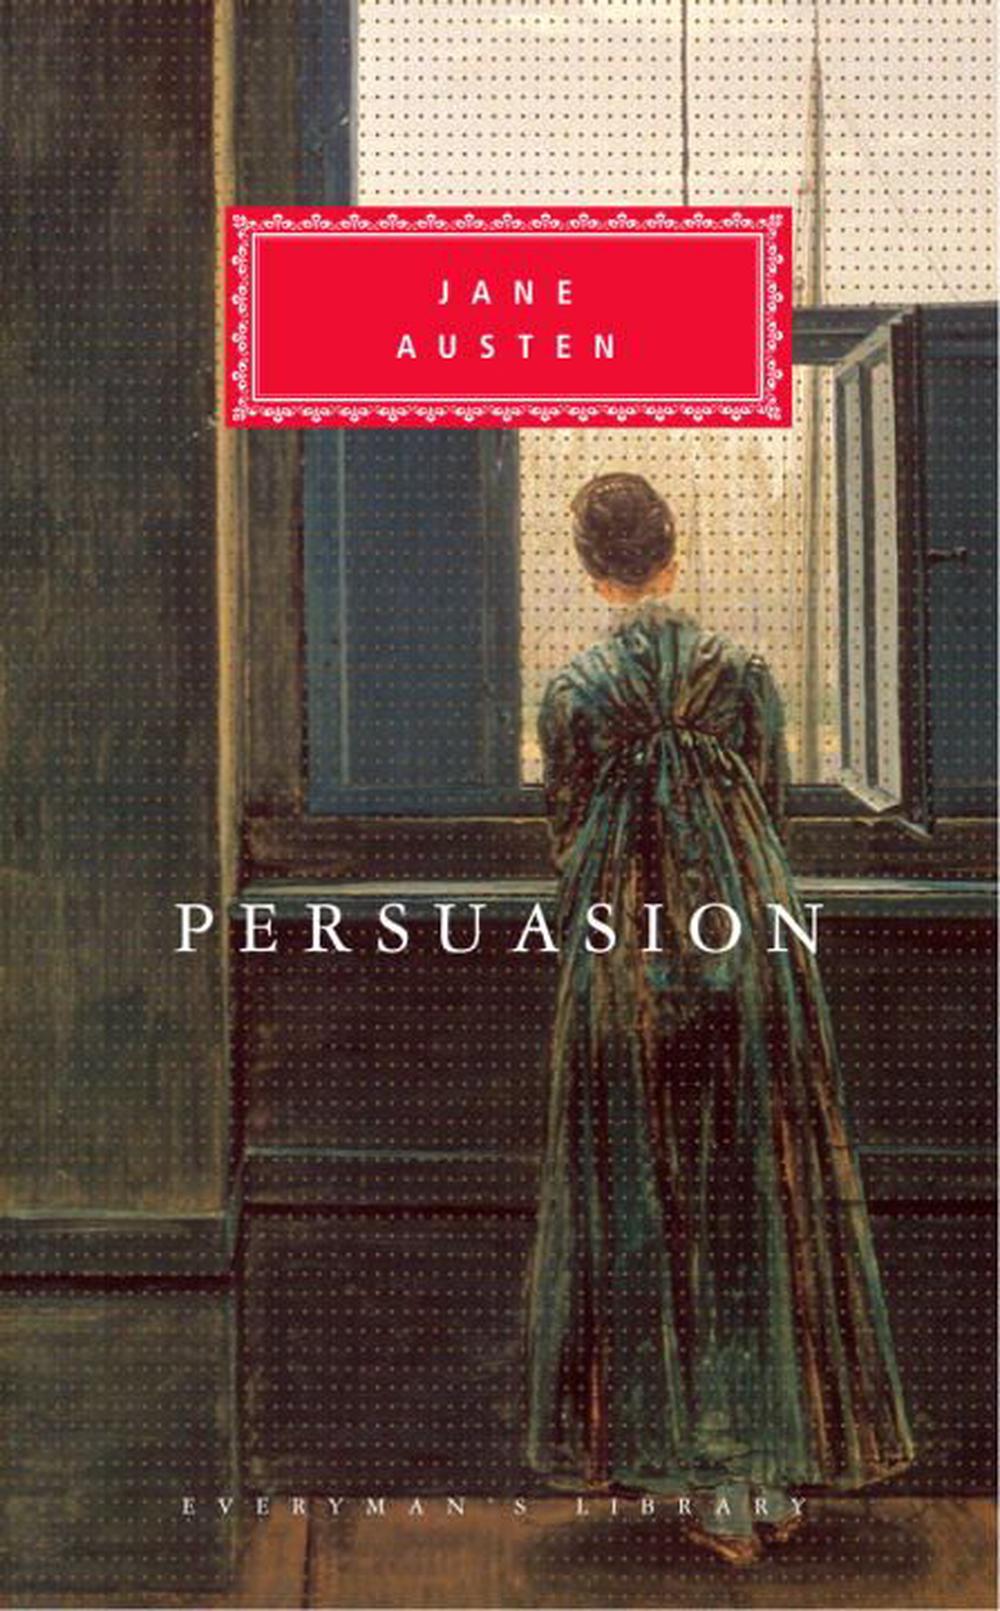 recipe for persuasion a novel